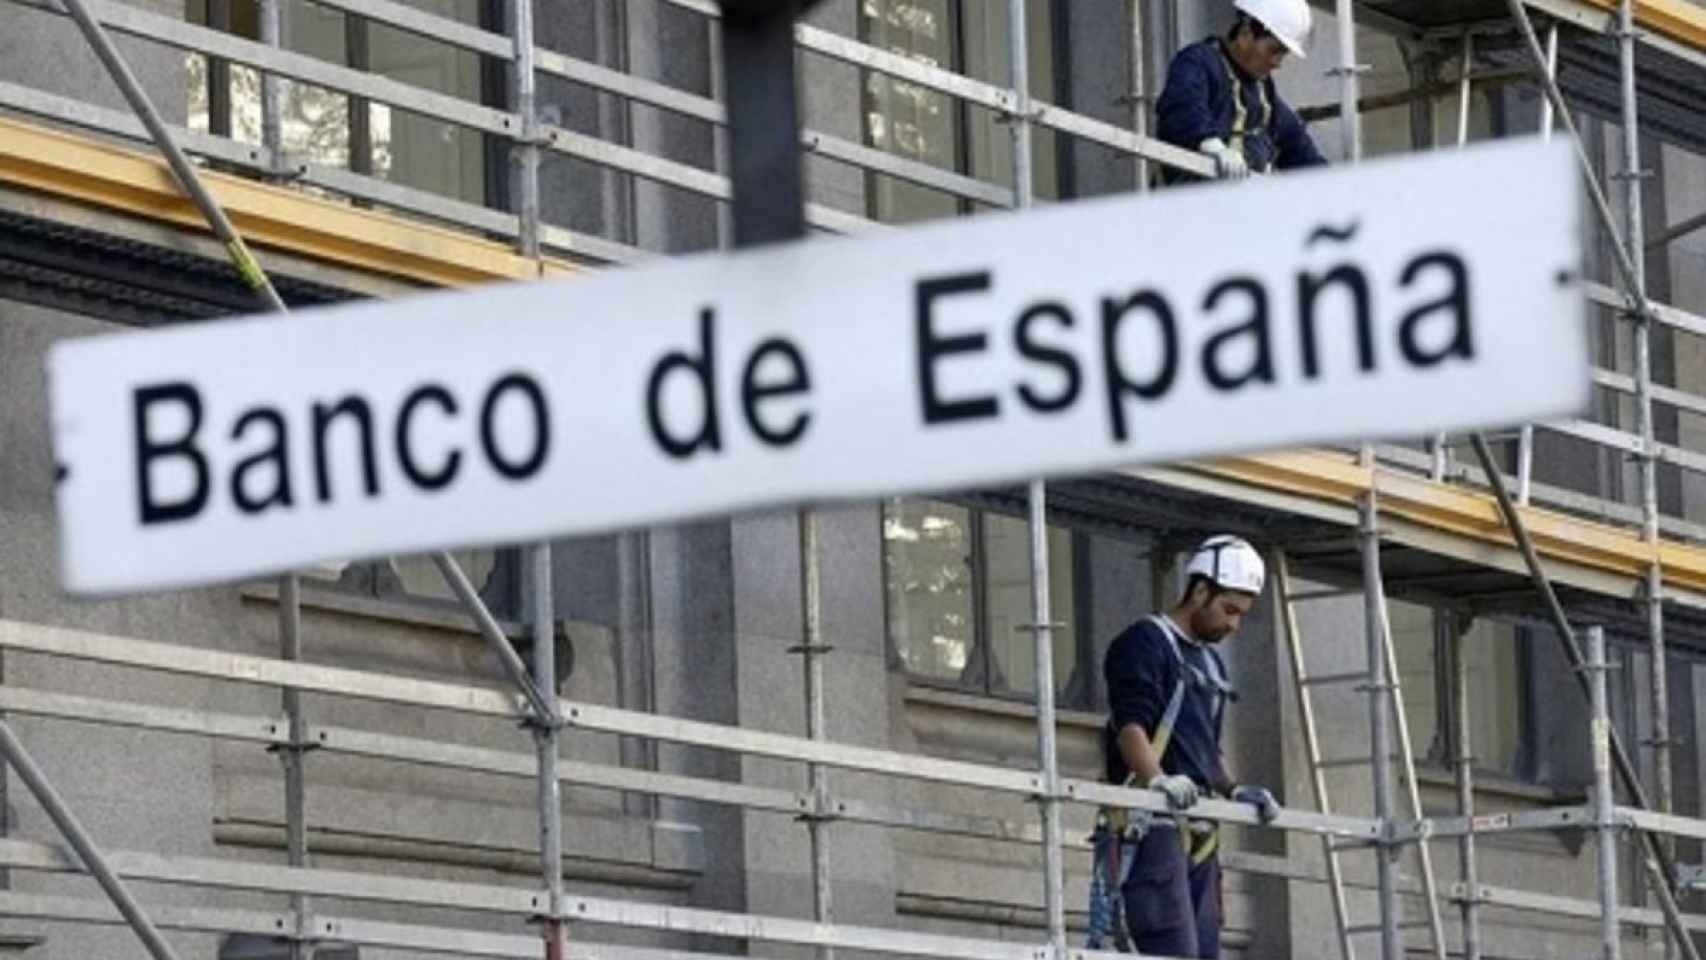 La comisión del rescate cita a inspectores del Banco de España, al expresidente de CECA y a cargos de la UE